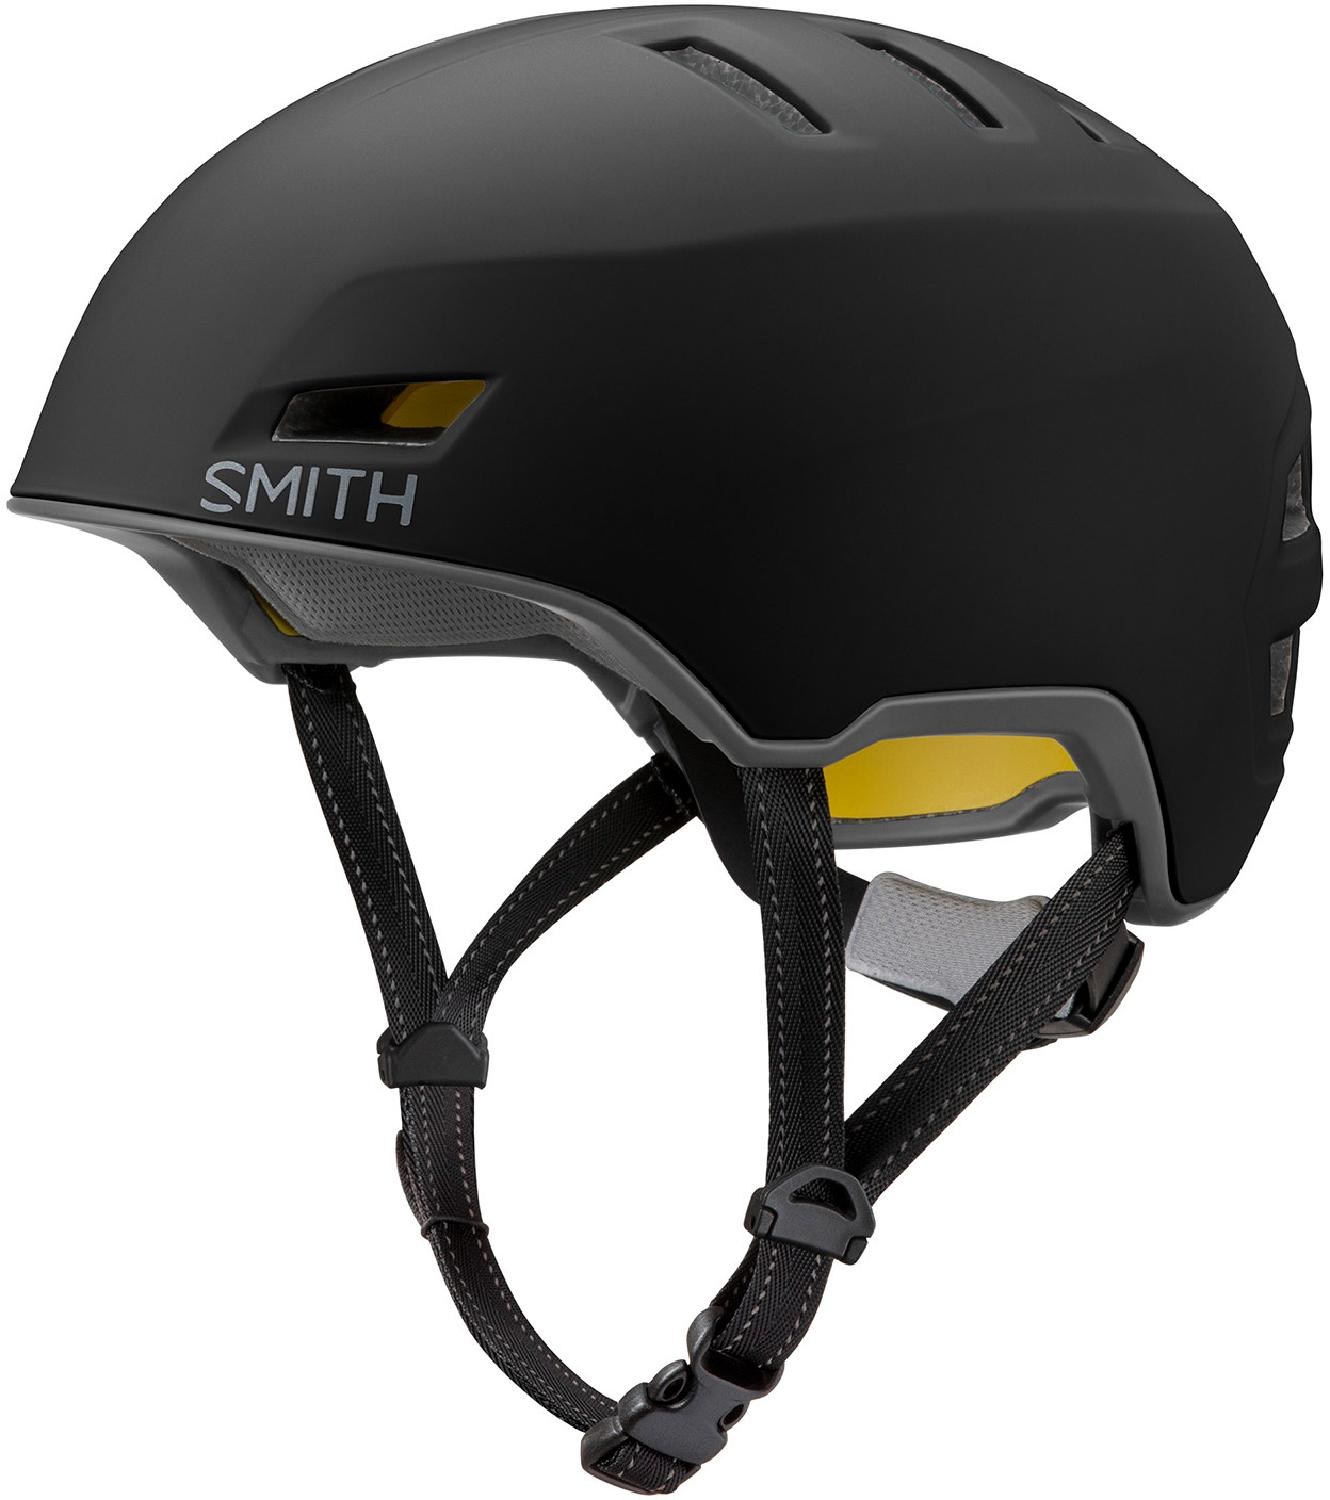 Велосипедный шлем Express MIPS Smith, черный